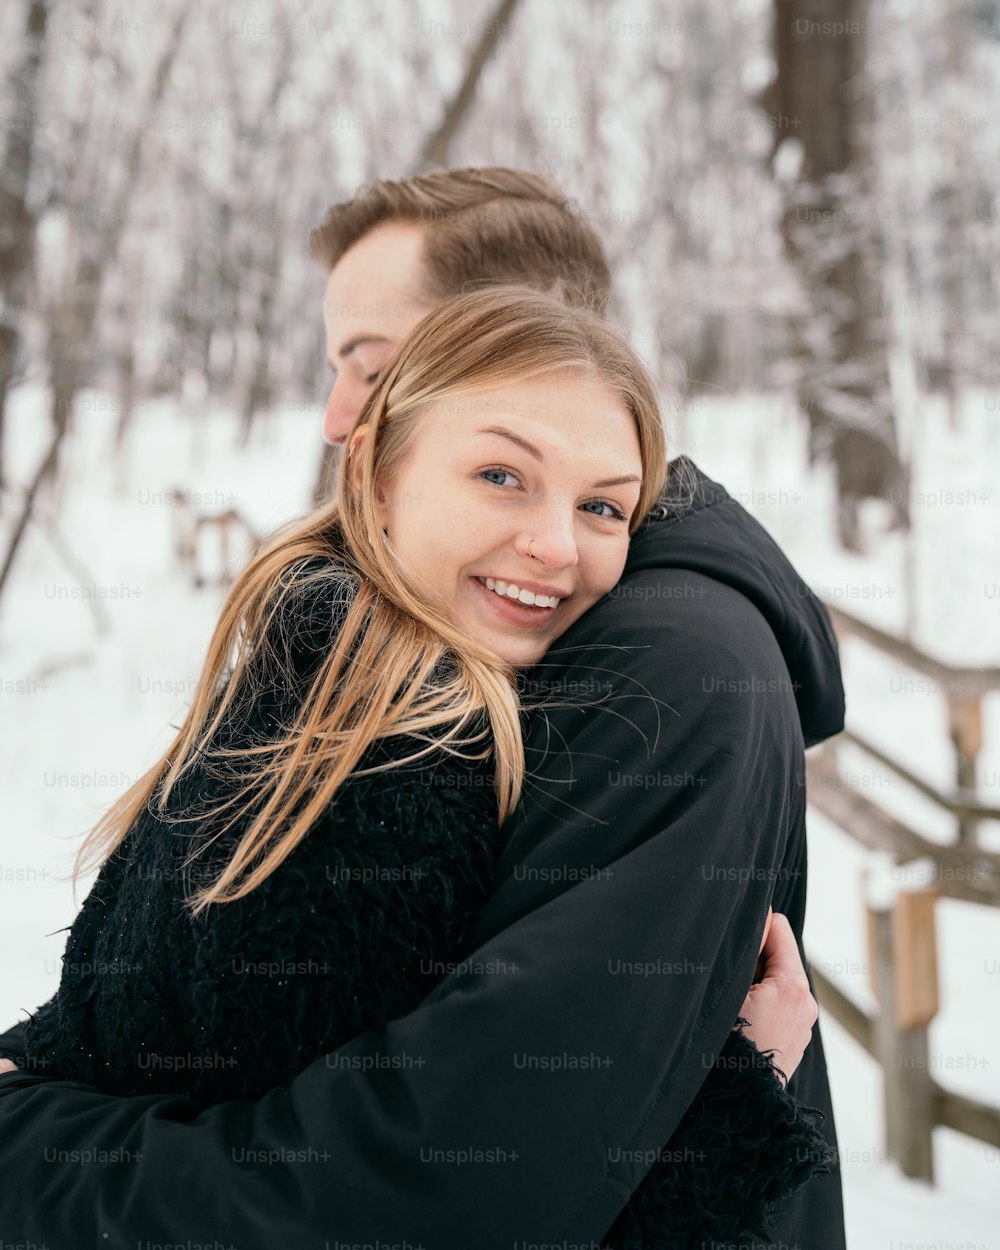 Ein Mann umarmt eine Frau im Schnee